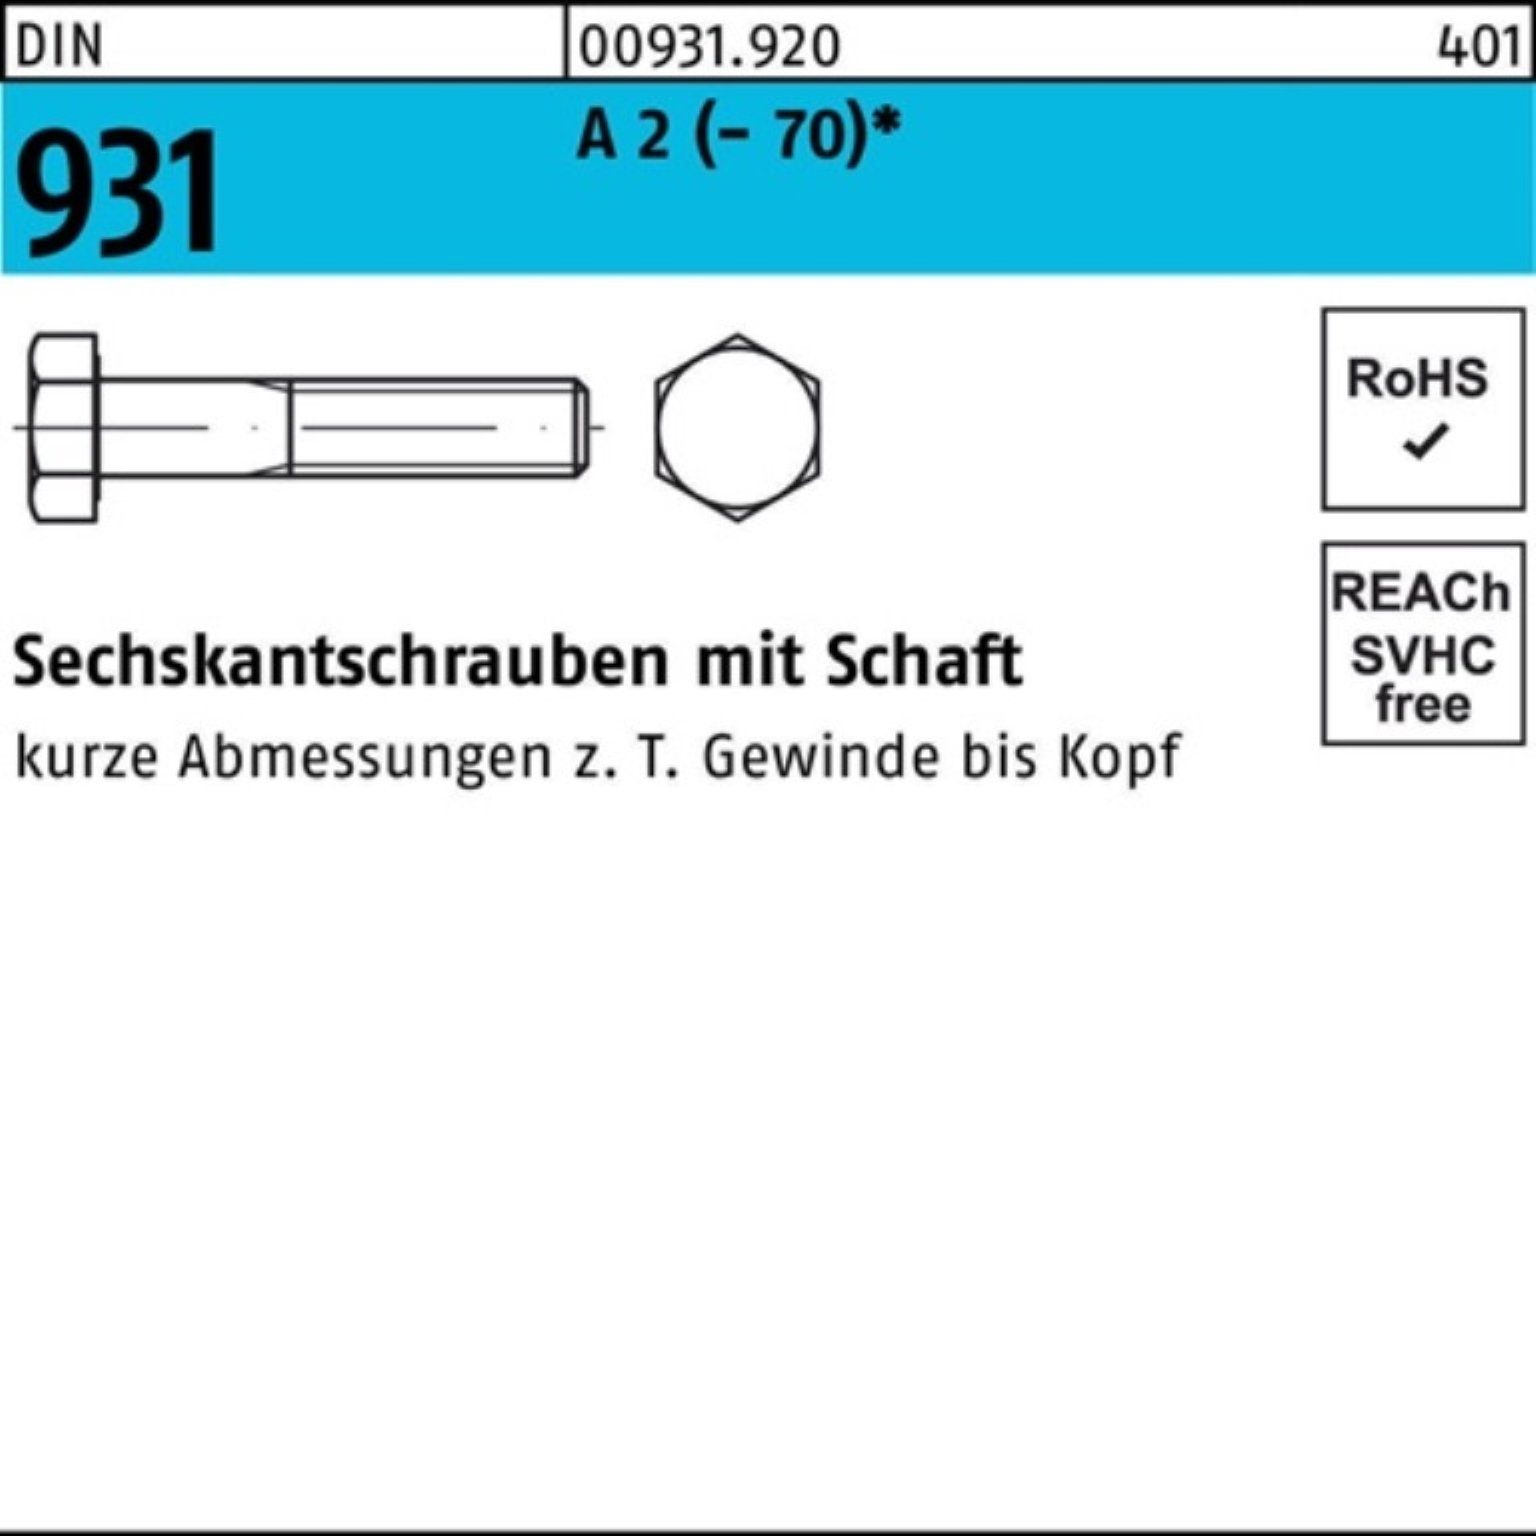 25 Stü Pack Sechskantschraube DIN 100er Schaft Reyher Sechskantschraube 200 A 2 (70) M8x 931